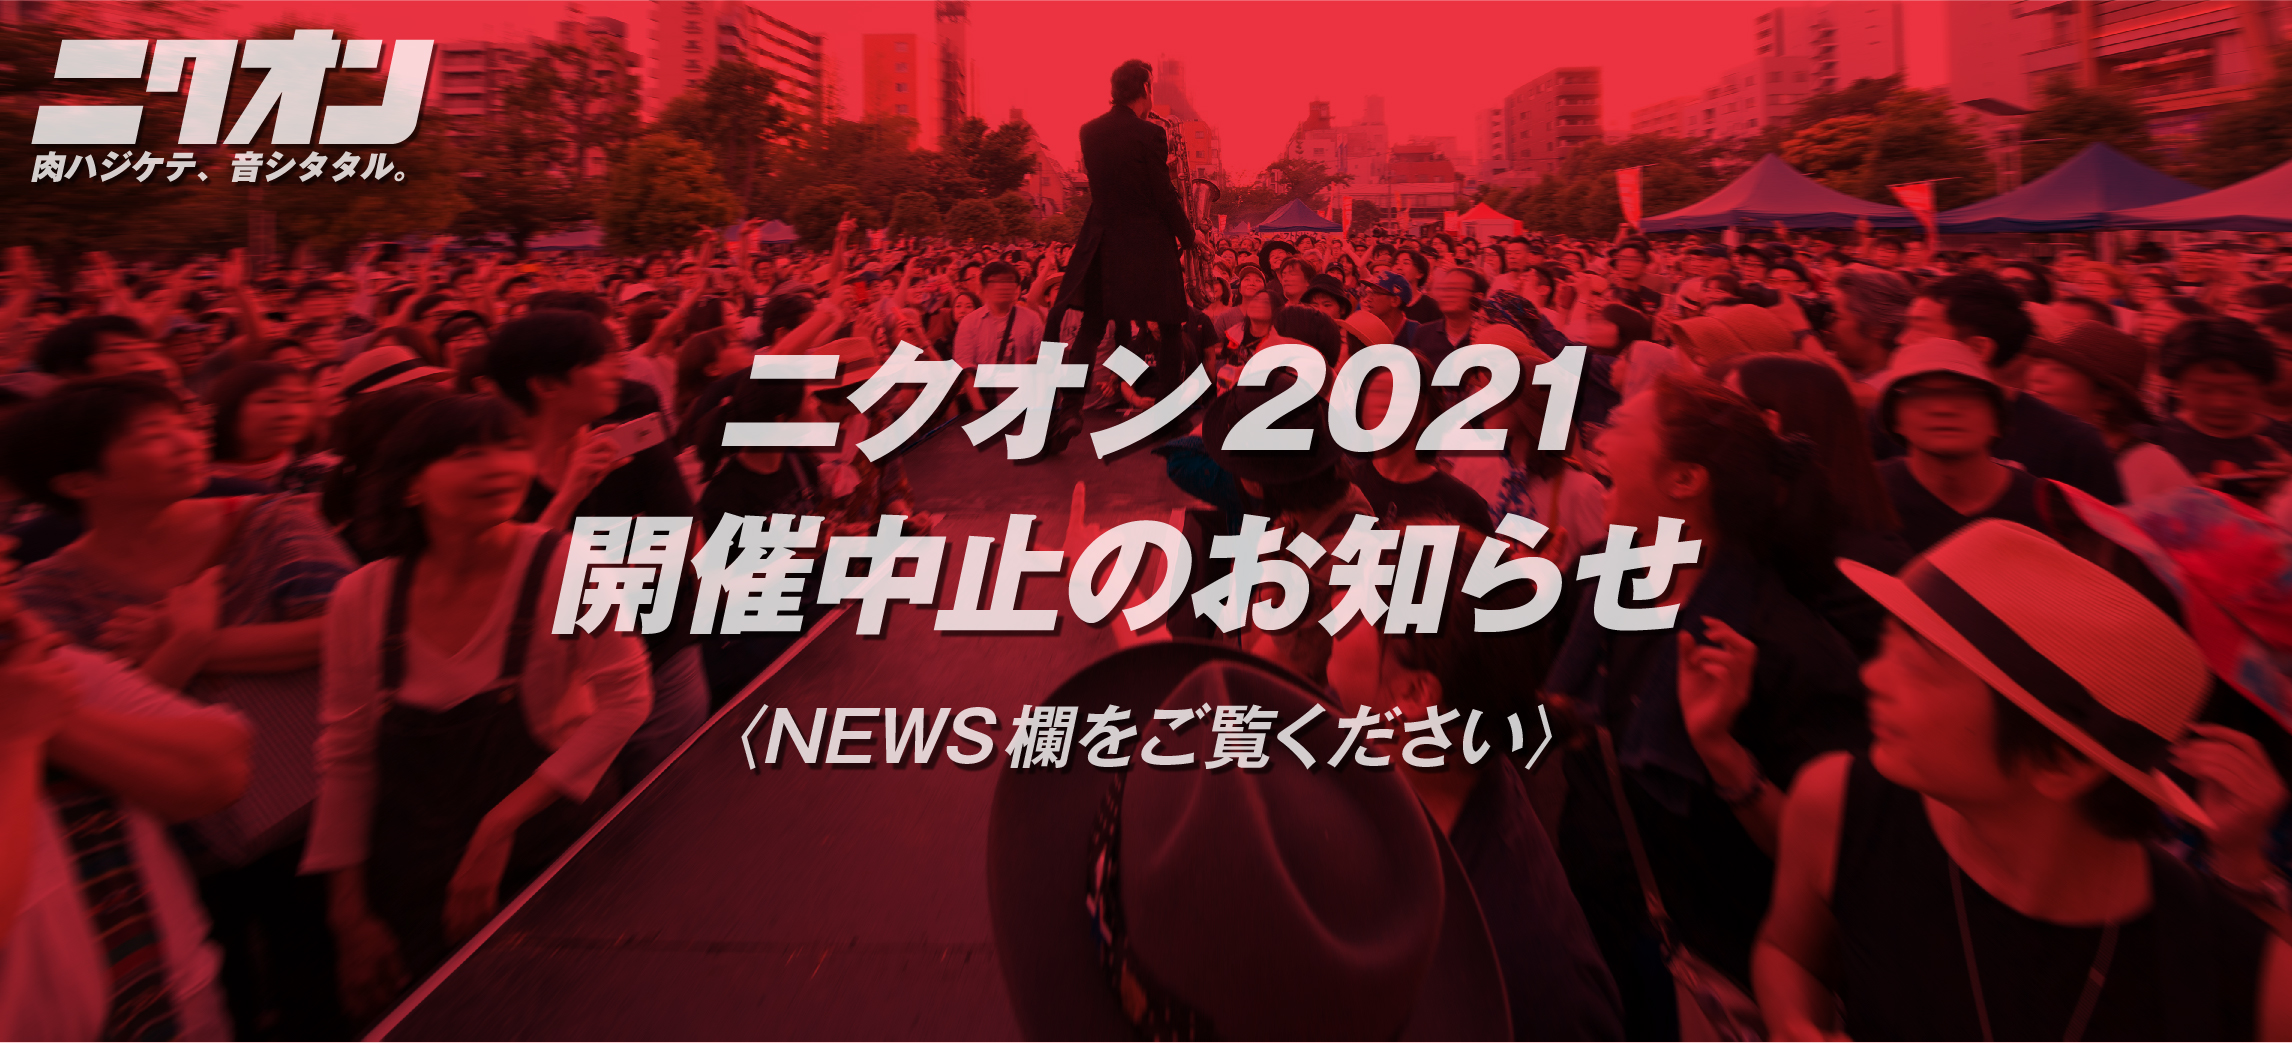 ニクオン2021開催中止のお知らせ